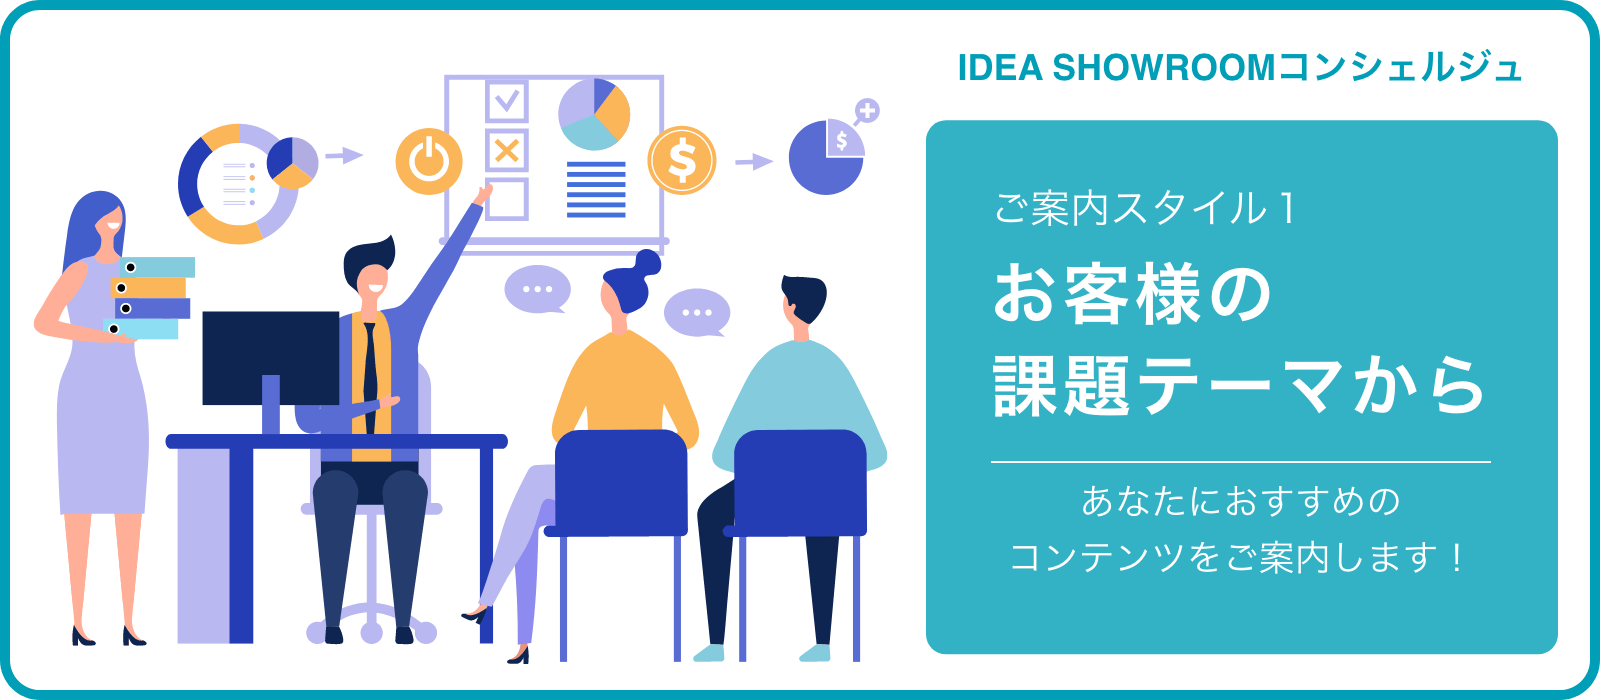 IDEA SHOWROOMコンシェルジュ ご案内スタイル1 お客様の課題テーマから あなたにおすすめのコンテンツをご案内します！